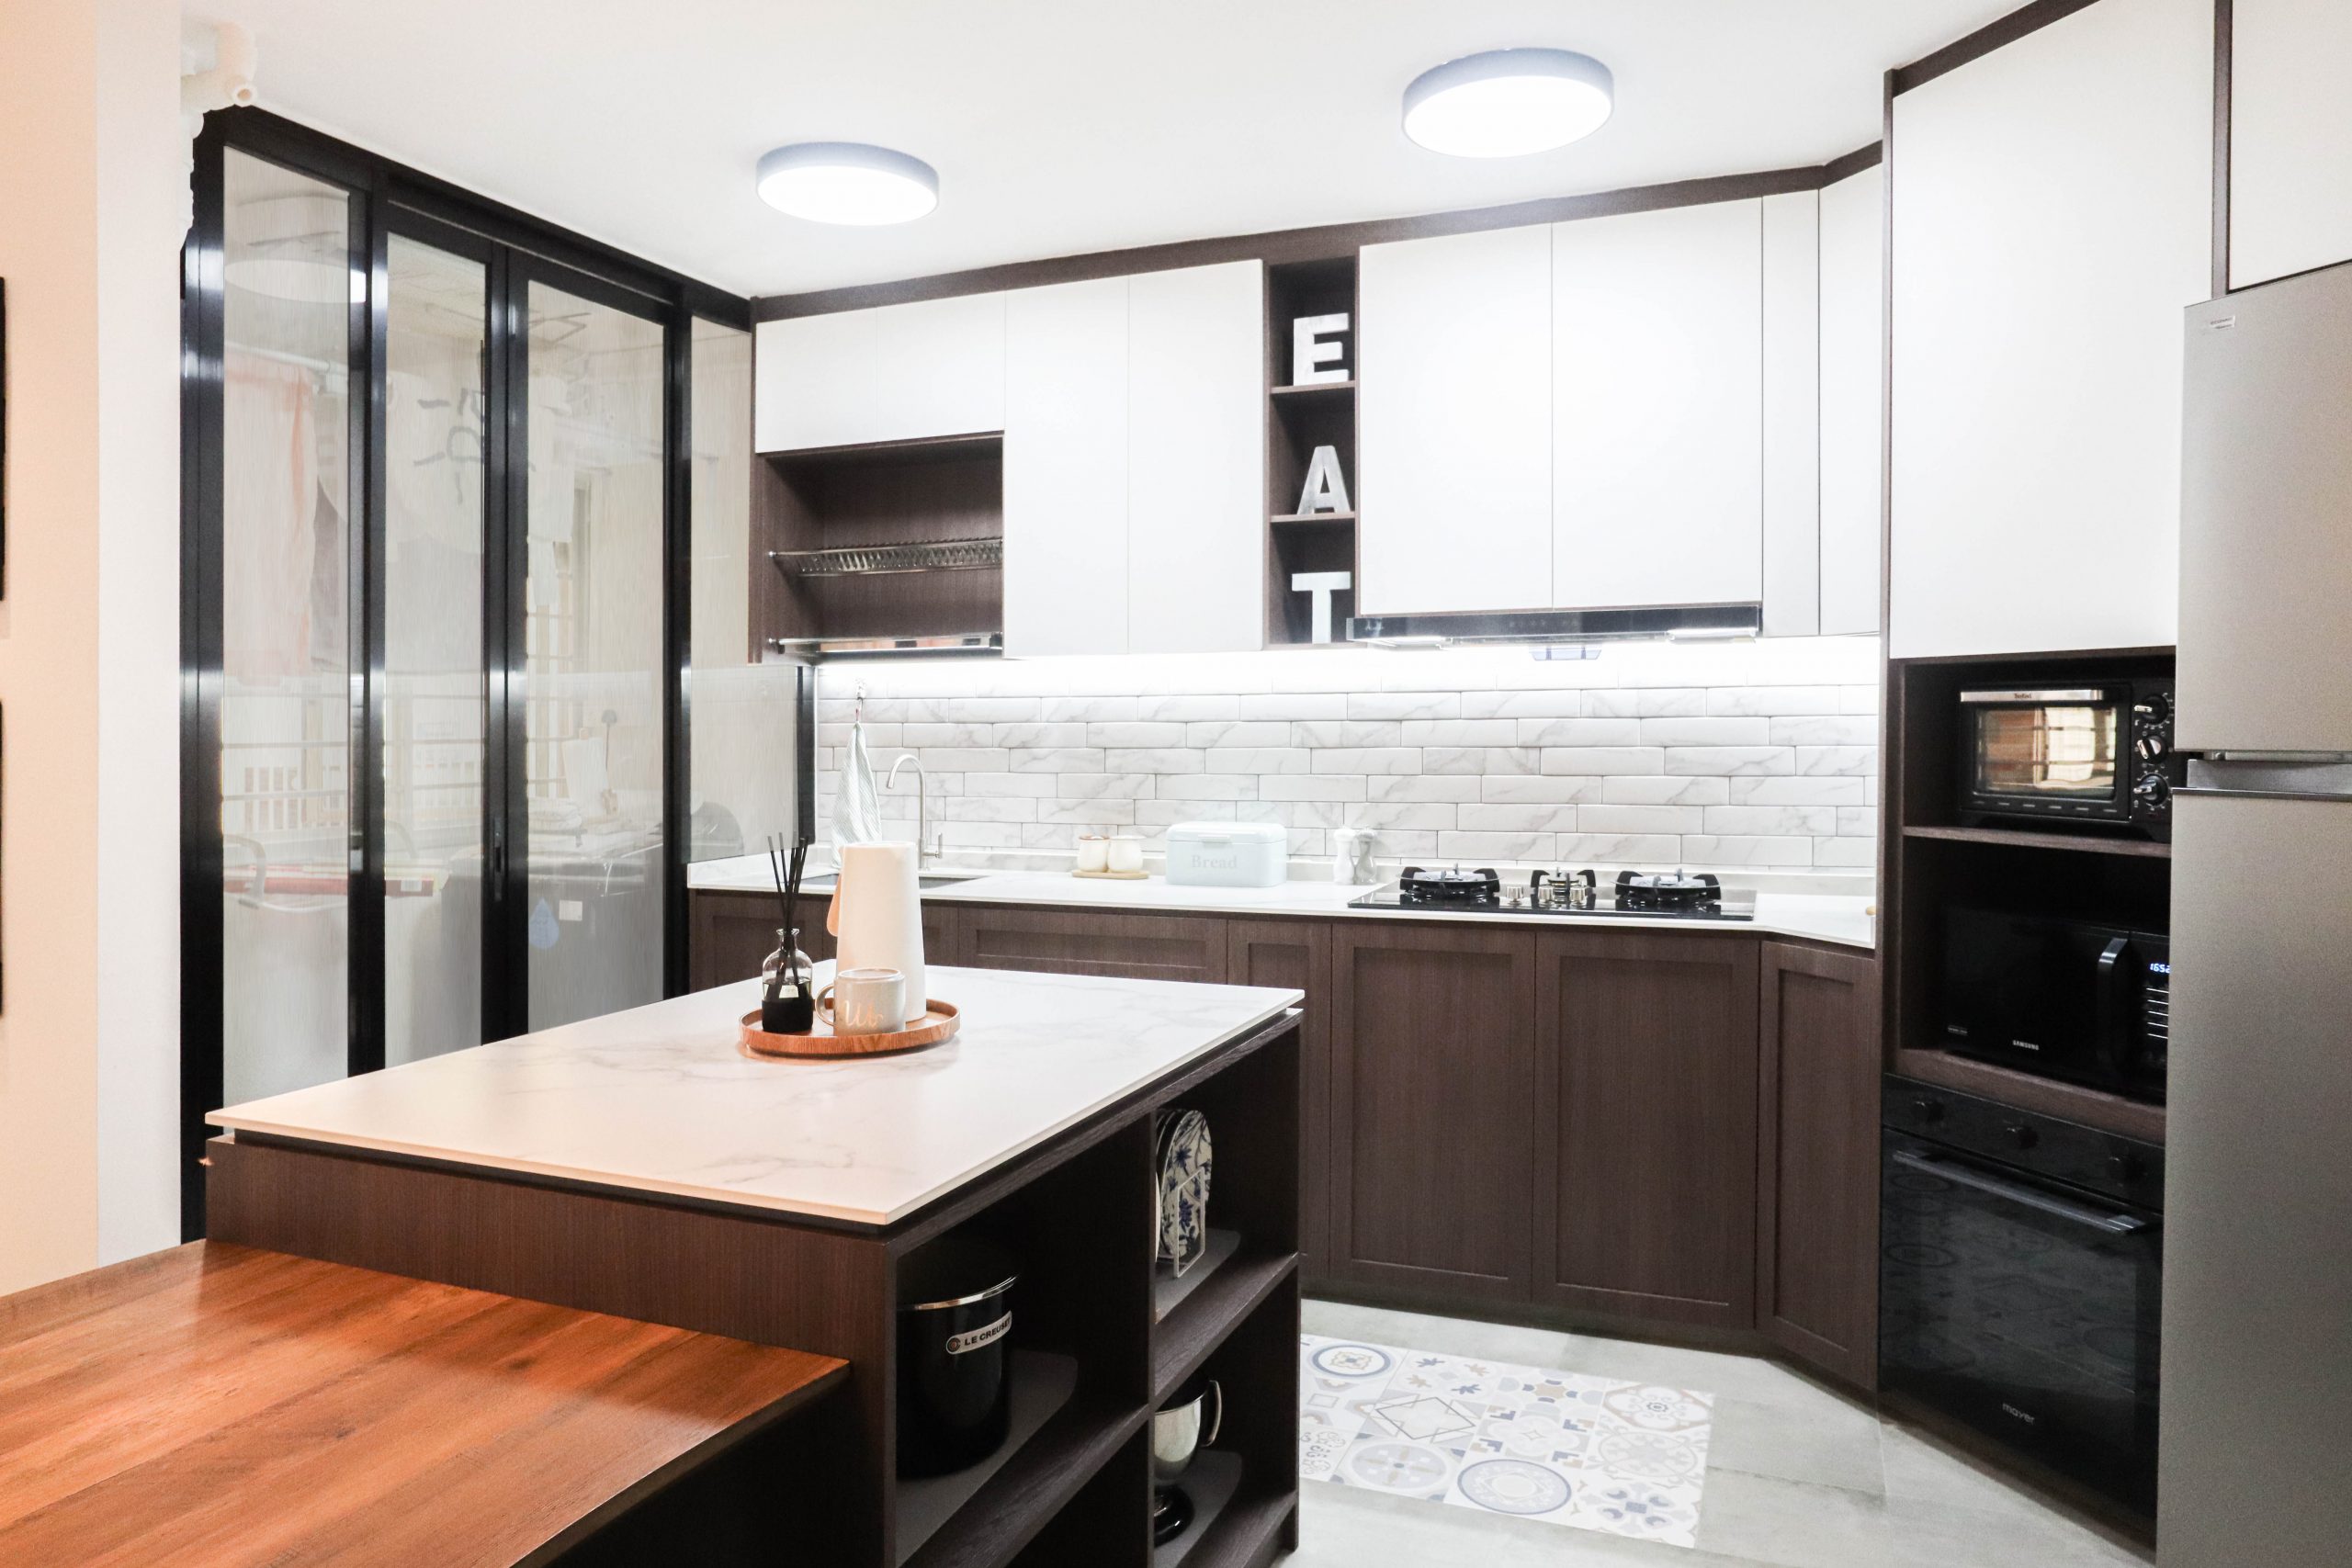 HDB BTO Kitchen Island in Industrial Rustic Interior Design Style with White and Dark Kitchen Cabinet Laminates Design